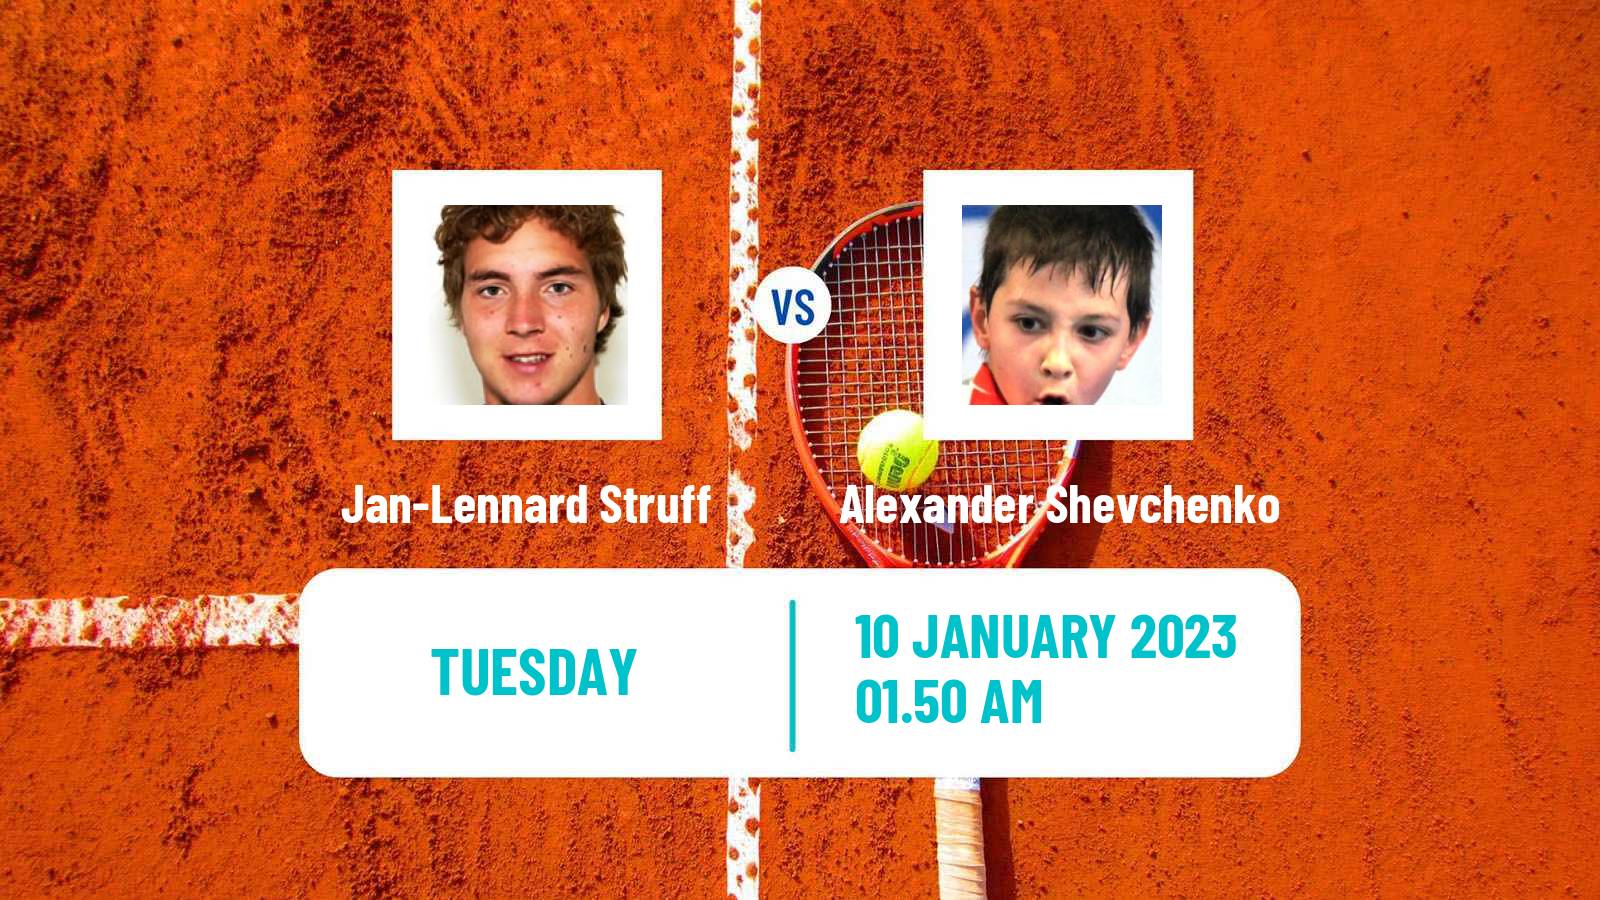 Tennis ATP Australian Open Jan-Lennard Struff - Alexander Shevchenko